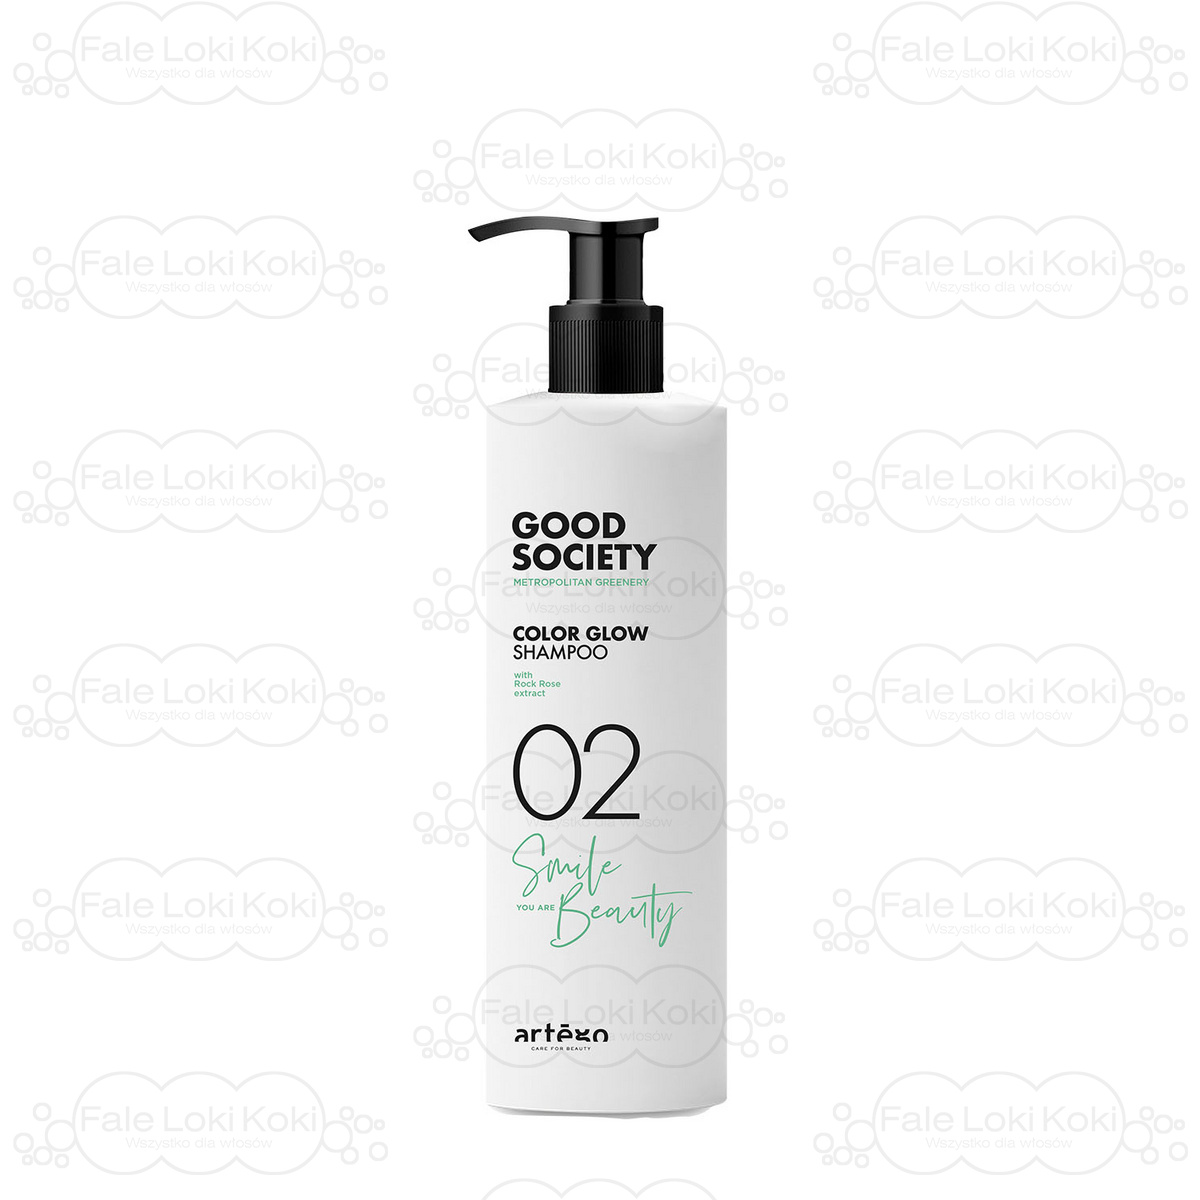 ARTEGO GOOD SOCIETY szampon  do włosów farbowanych 02 COLOR GLOW SHAMPOO  1000 ml